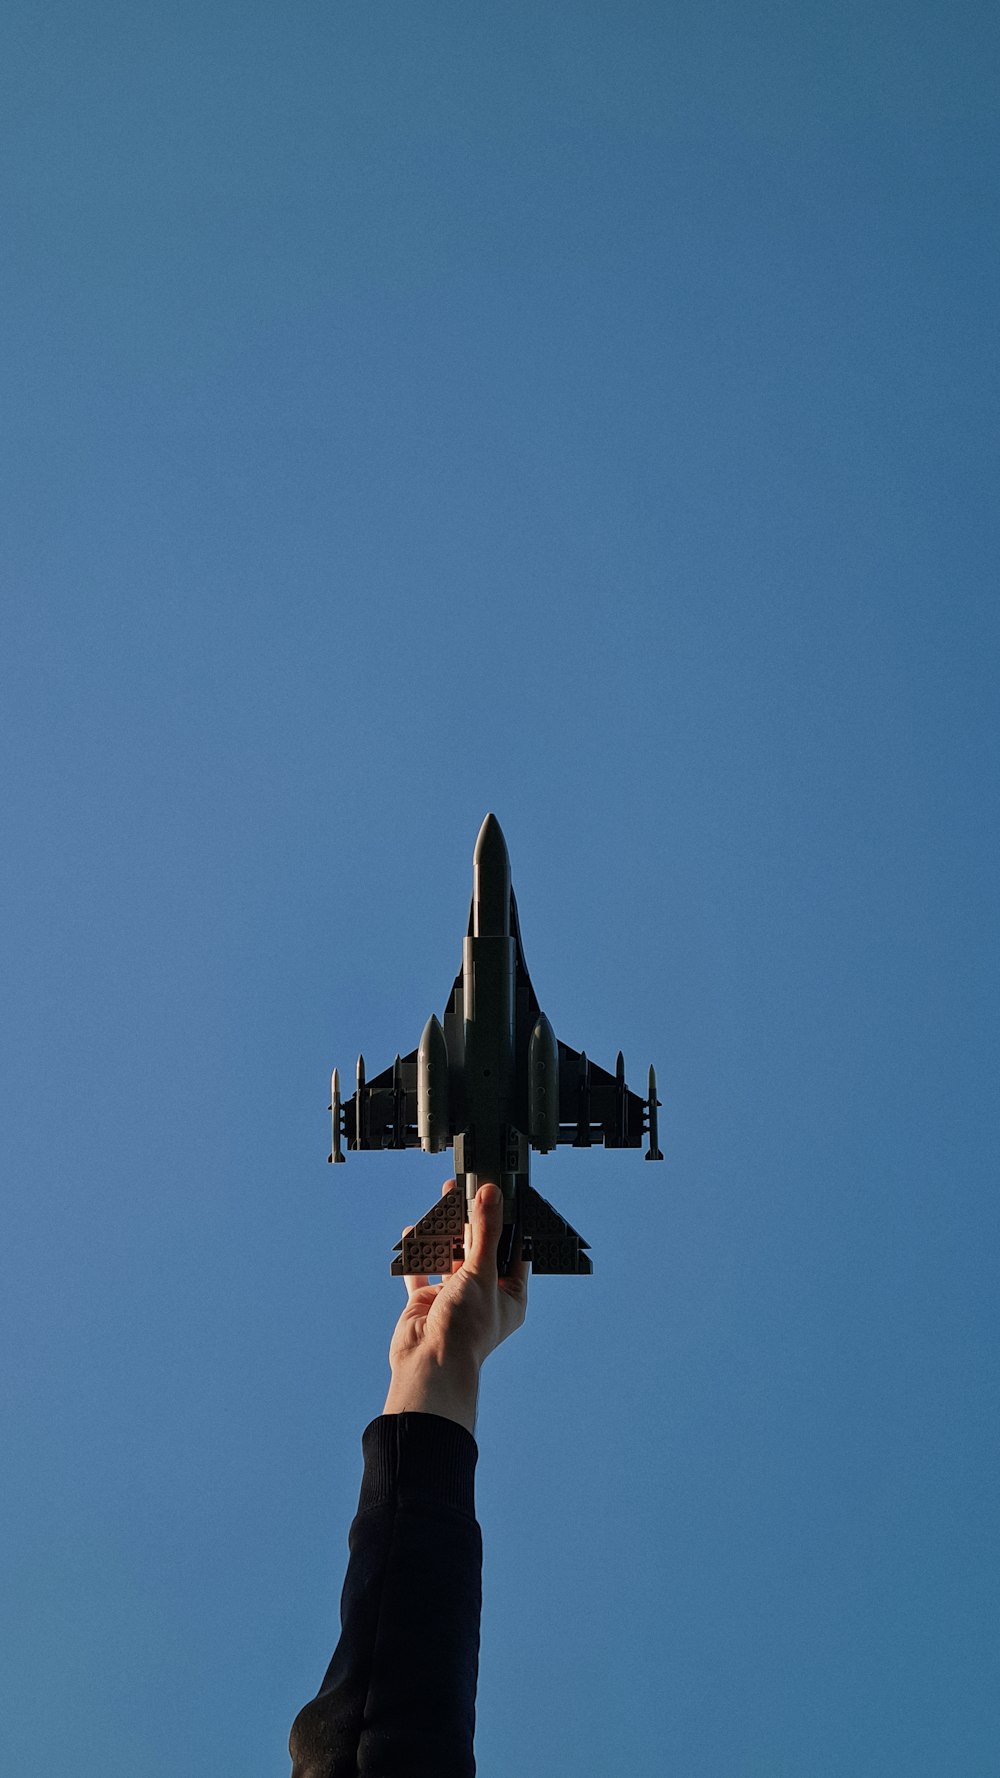 Una persona sosteniendo un avión de juguete en el aire